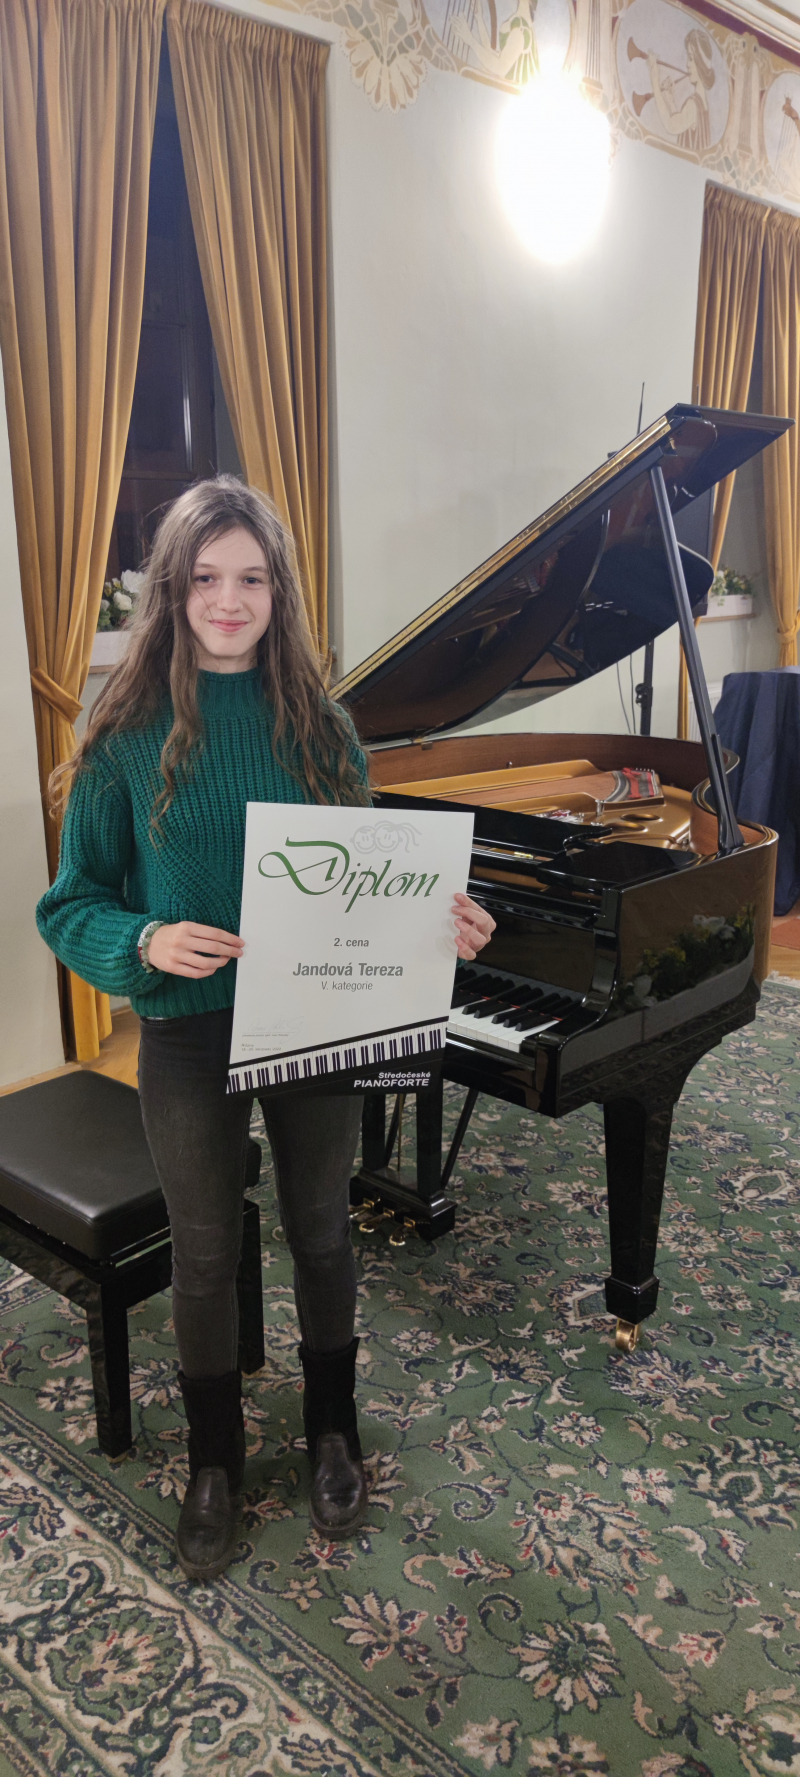 Diplom 2. cena a Tereza Jandová, klavírní soutěž Pianoforte Říčany 2022 